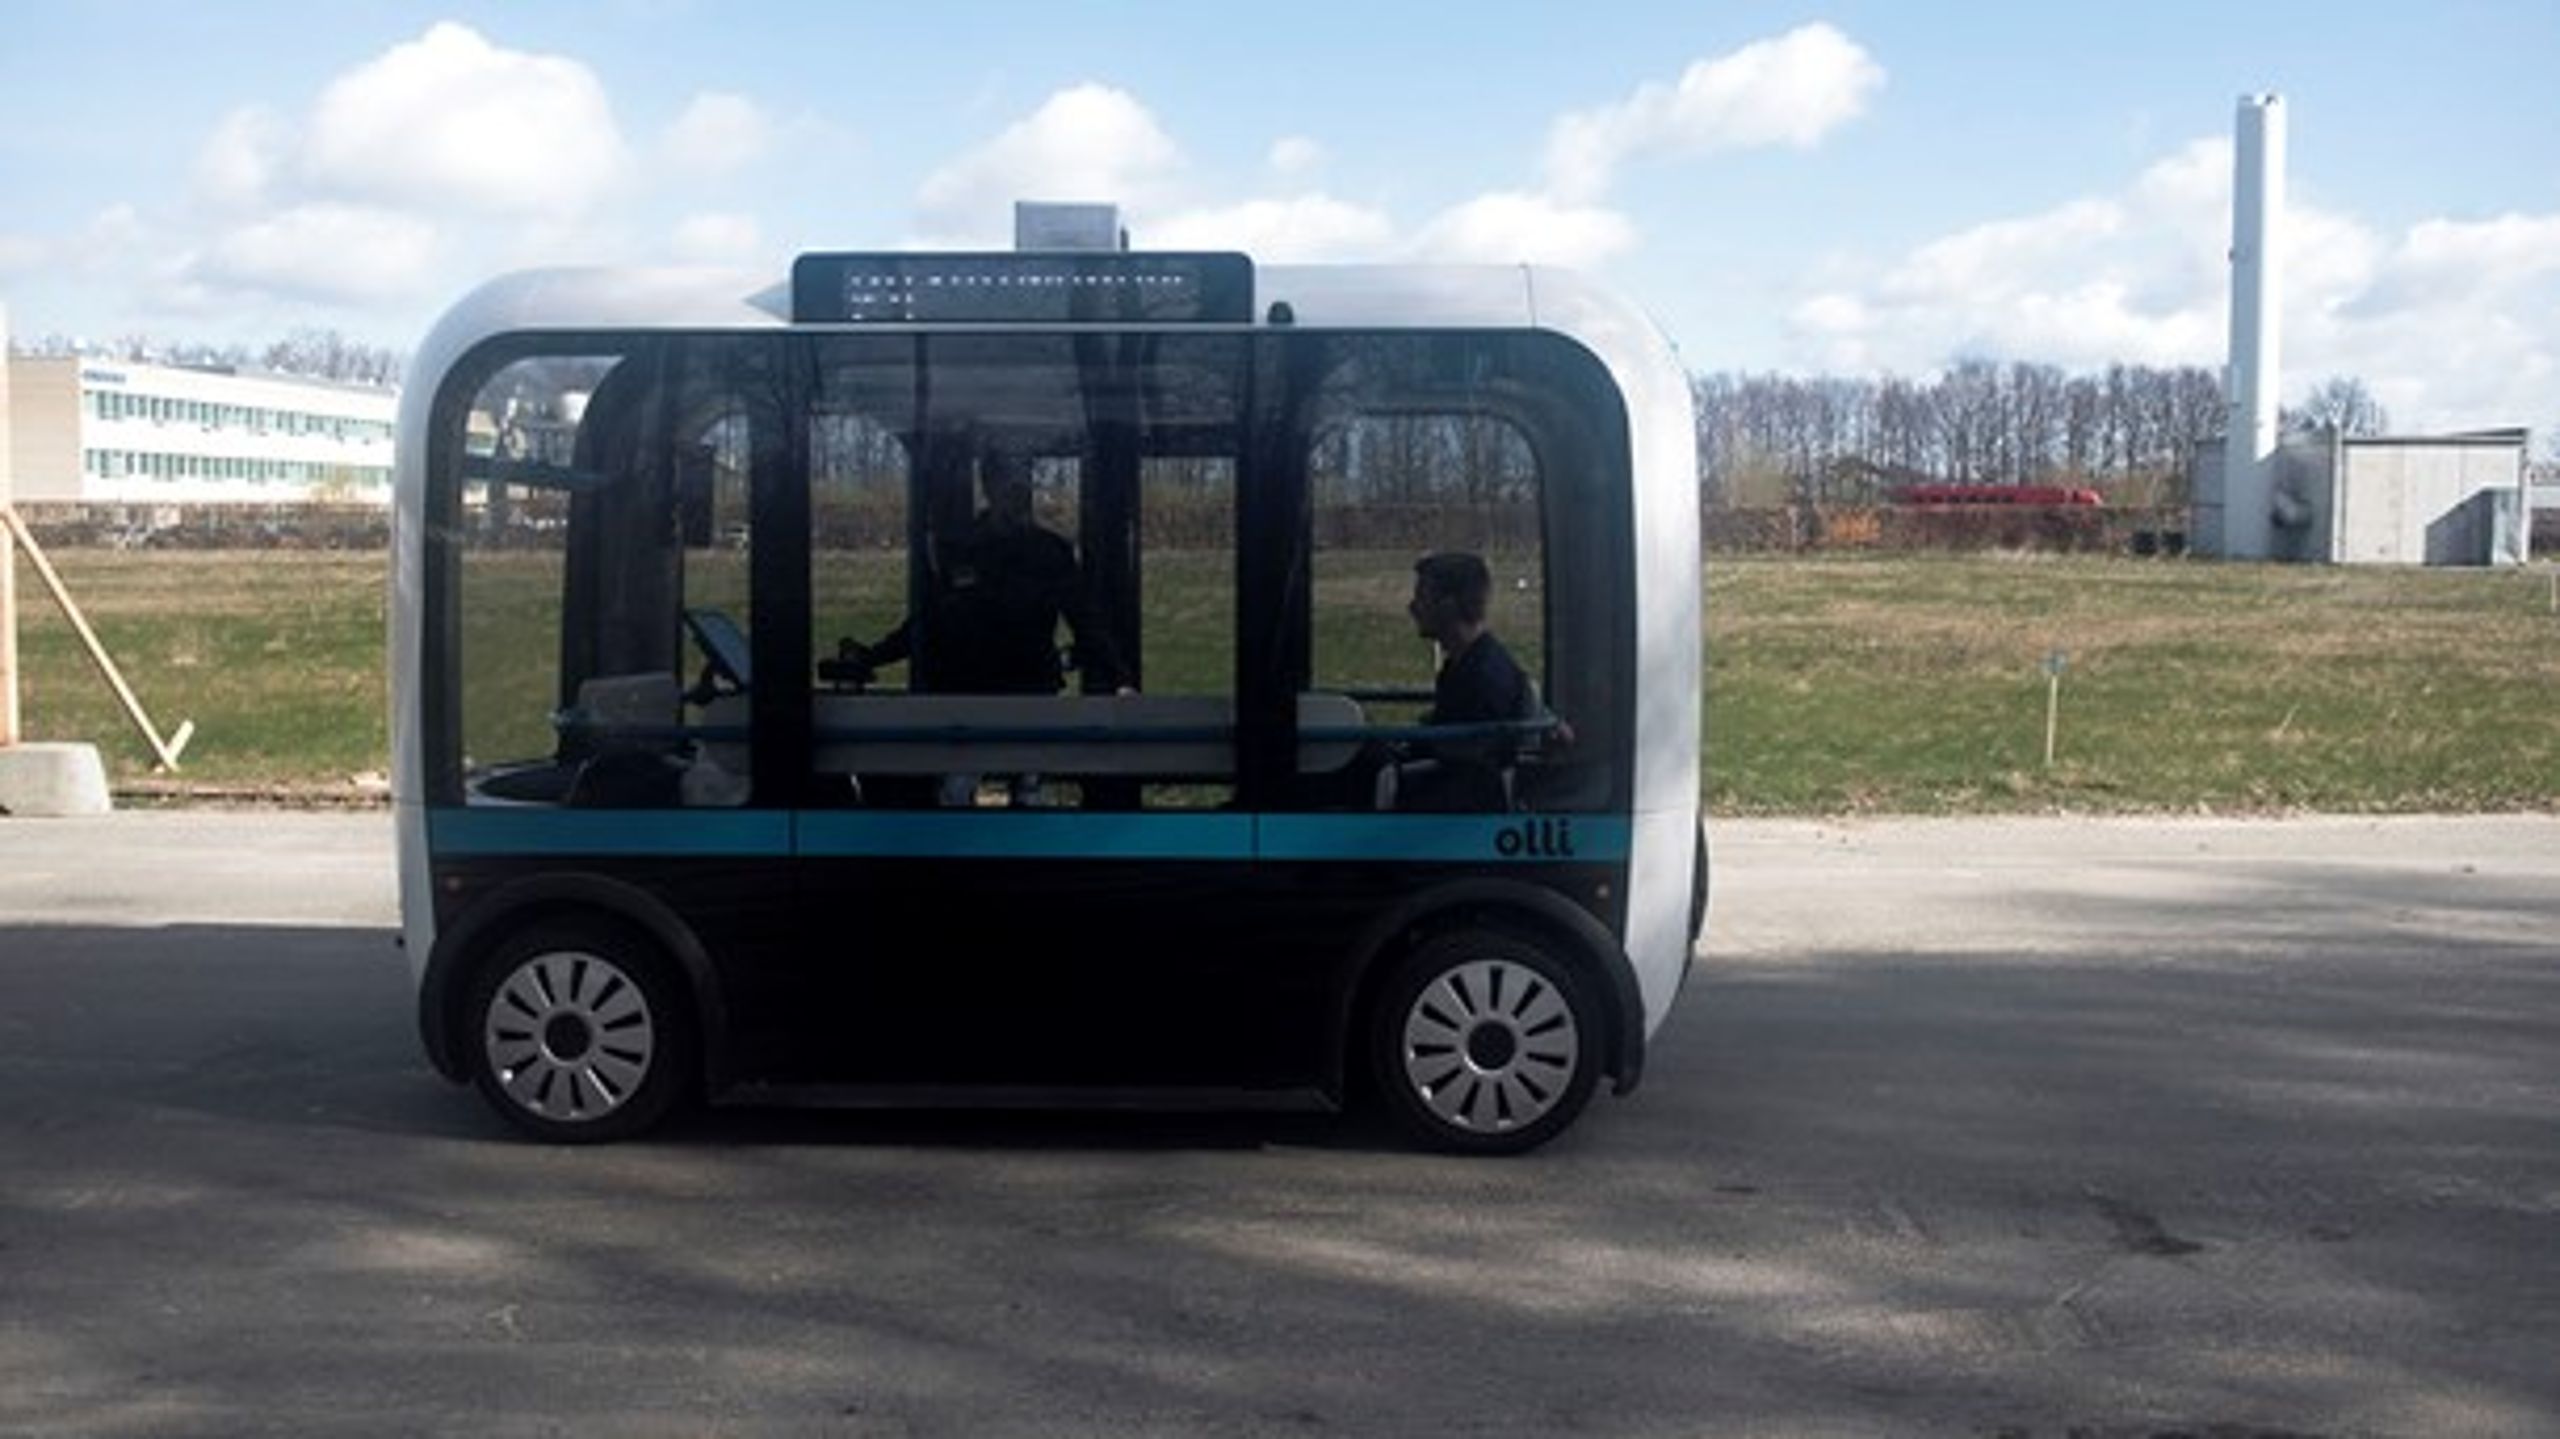 Selvkørende busser fremhæves som en af de teknologier, der på sigt&nbsp;kan være med til at øge mobiliteten i landdistrikterne i blandt andet Faaborg-Midtfyn Kommune.